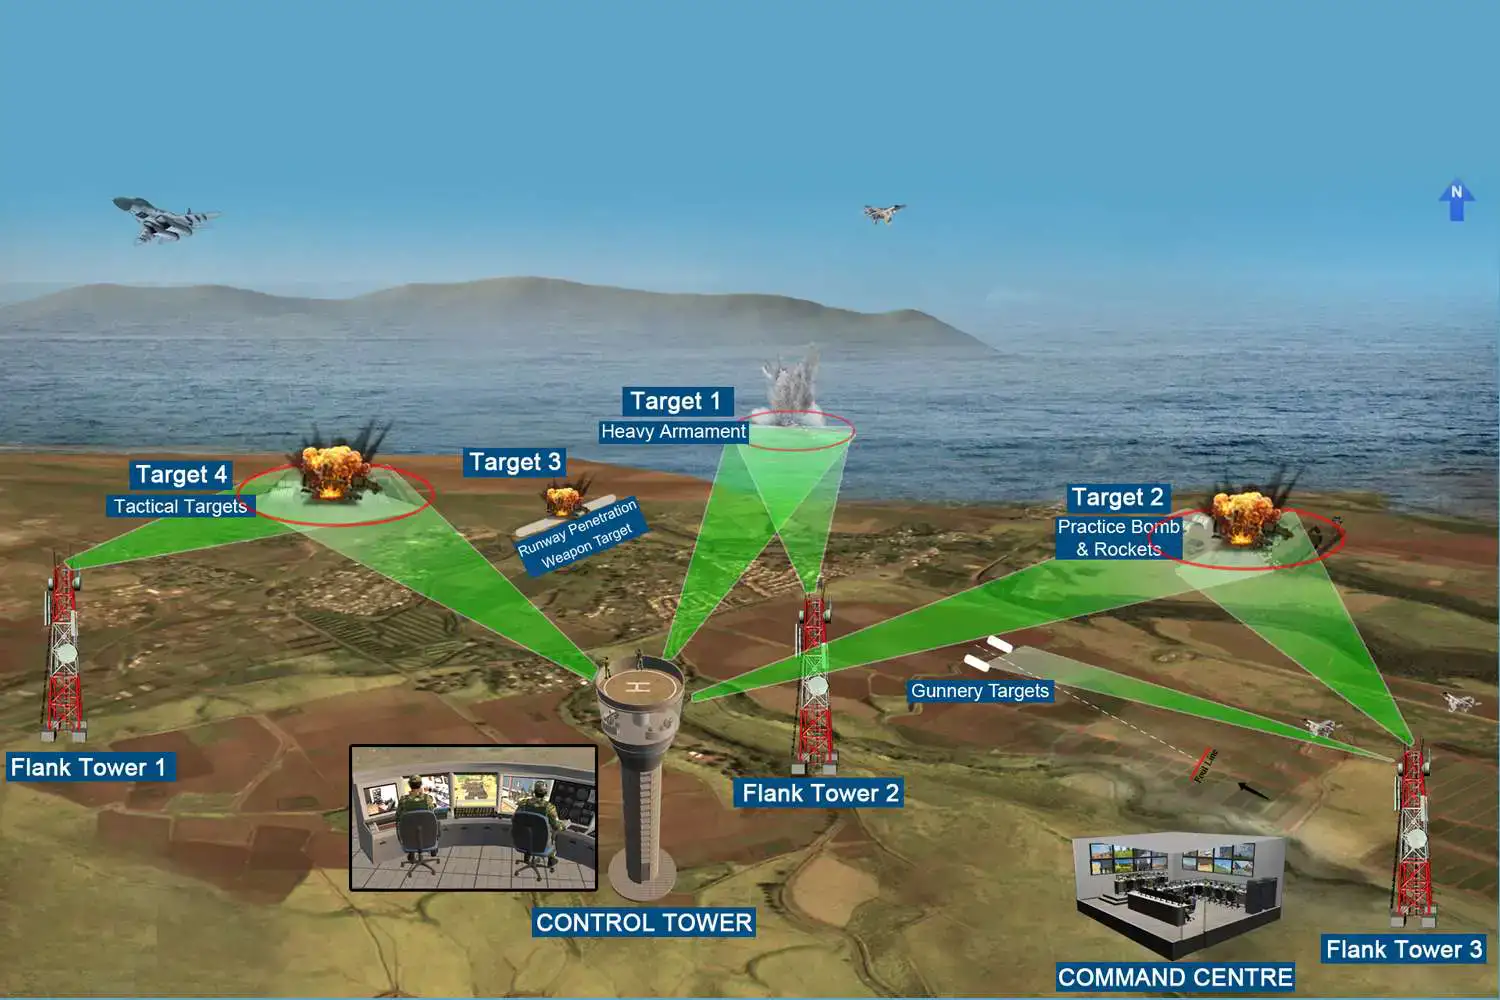 Air-to-Ground Firing Range Scoring System - Live Ranges